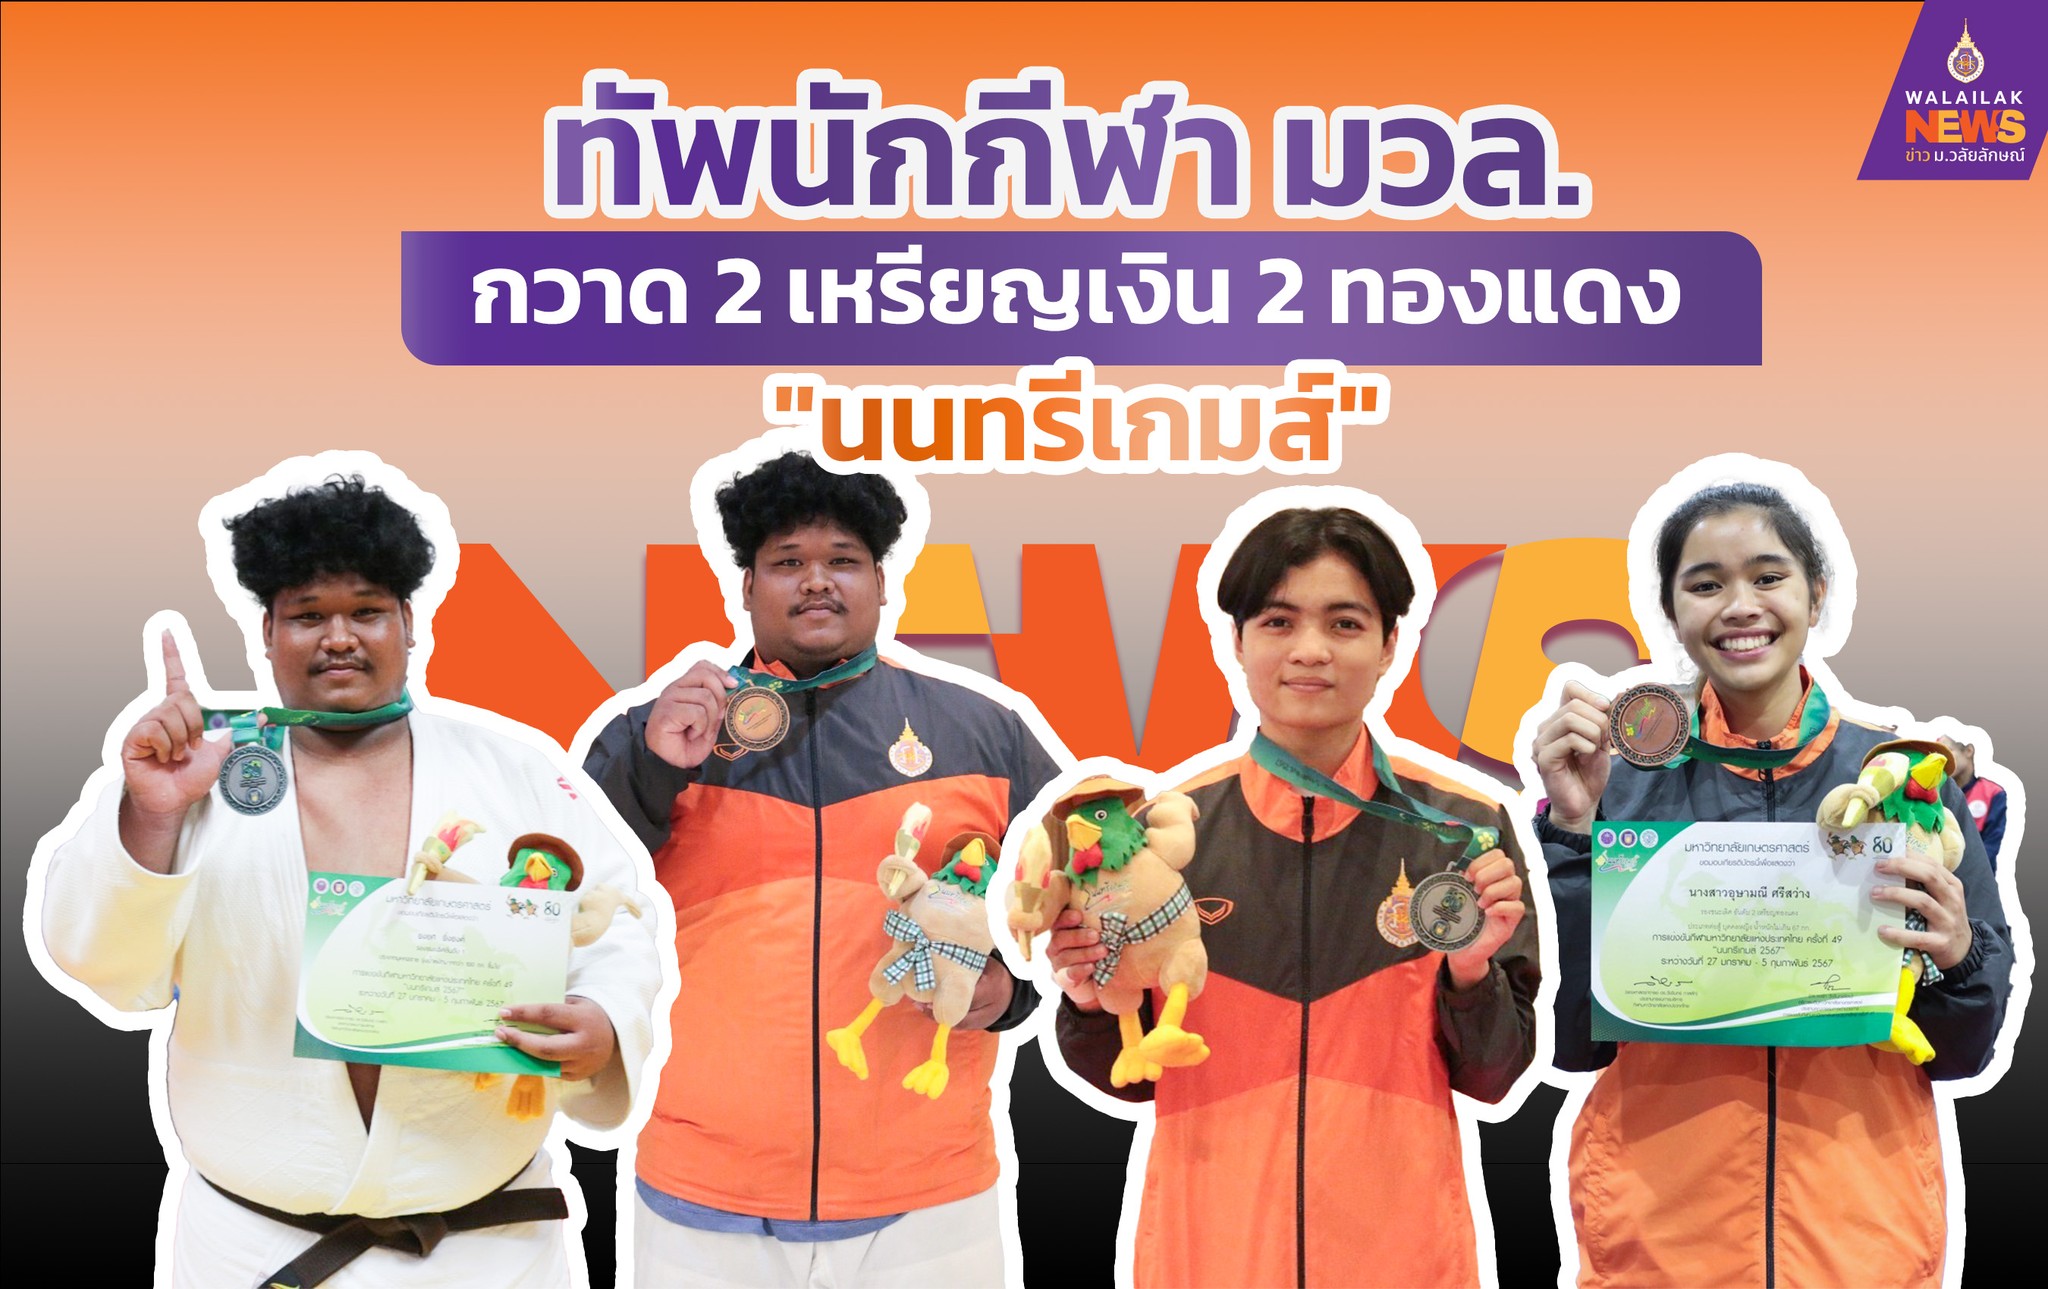 ตัวแทนนักกีฬาของมหาวิทยาลัยวลัยลักษณ์ โชว์ฟอร์มเก่ง คว้า 2 เหรียญเงิน 2 ทองแดง การแข่งขันกีฬามหาวิทยาลัยแห่งประเทศไทย ครั้งที่ 49 นนทรีเกมส์ รั้งอันดับที่ 48 ของประเทศจาก 122 สถาบันที่เข้าร่วม